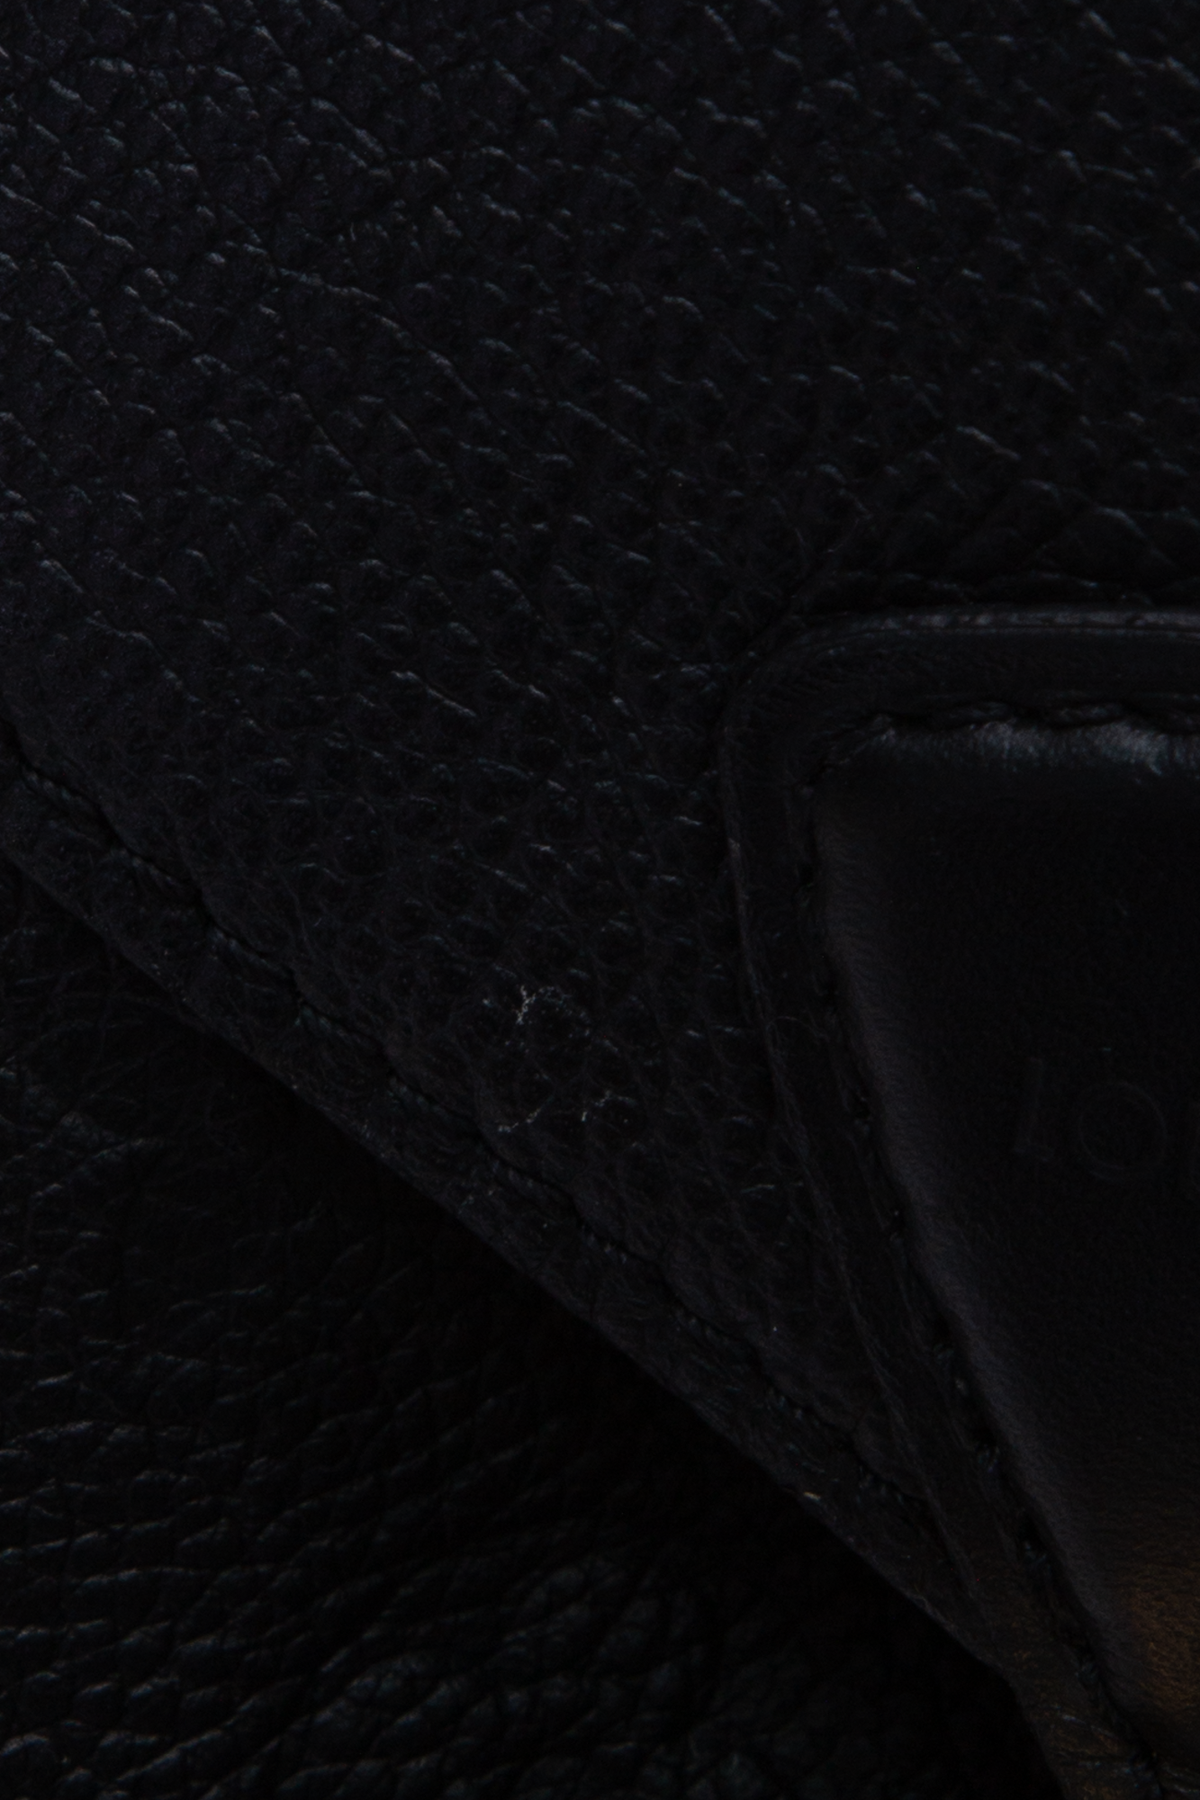 Louis Vuitton Black Montsouris Backpack – thankunext.us